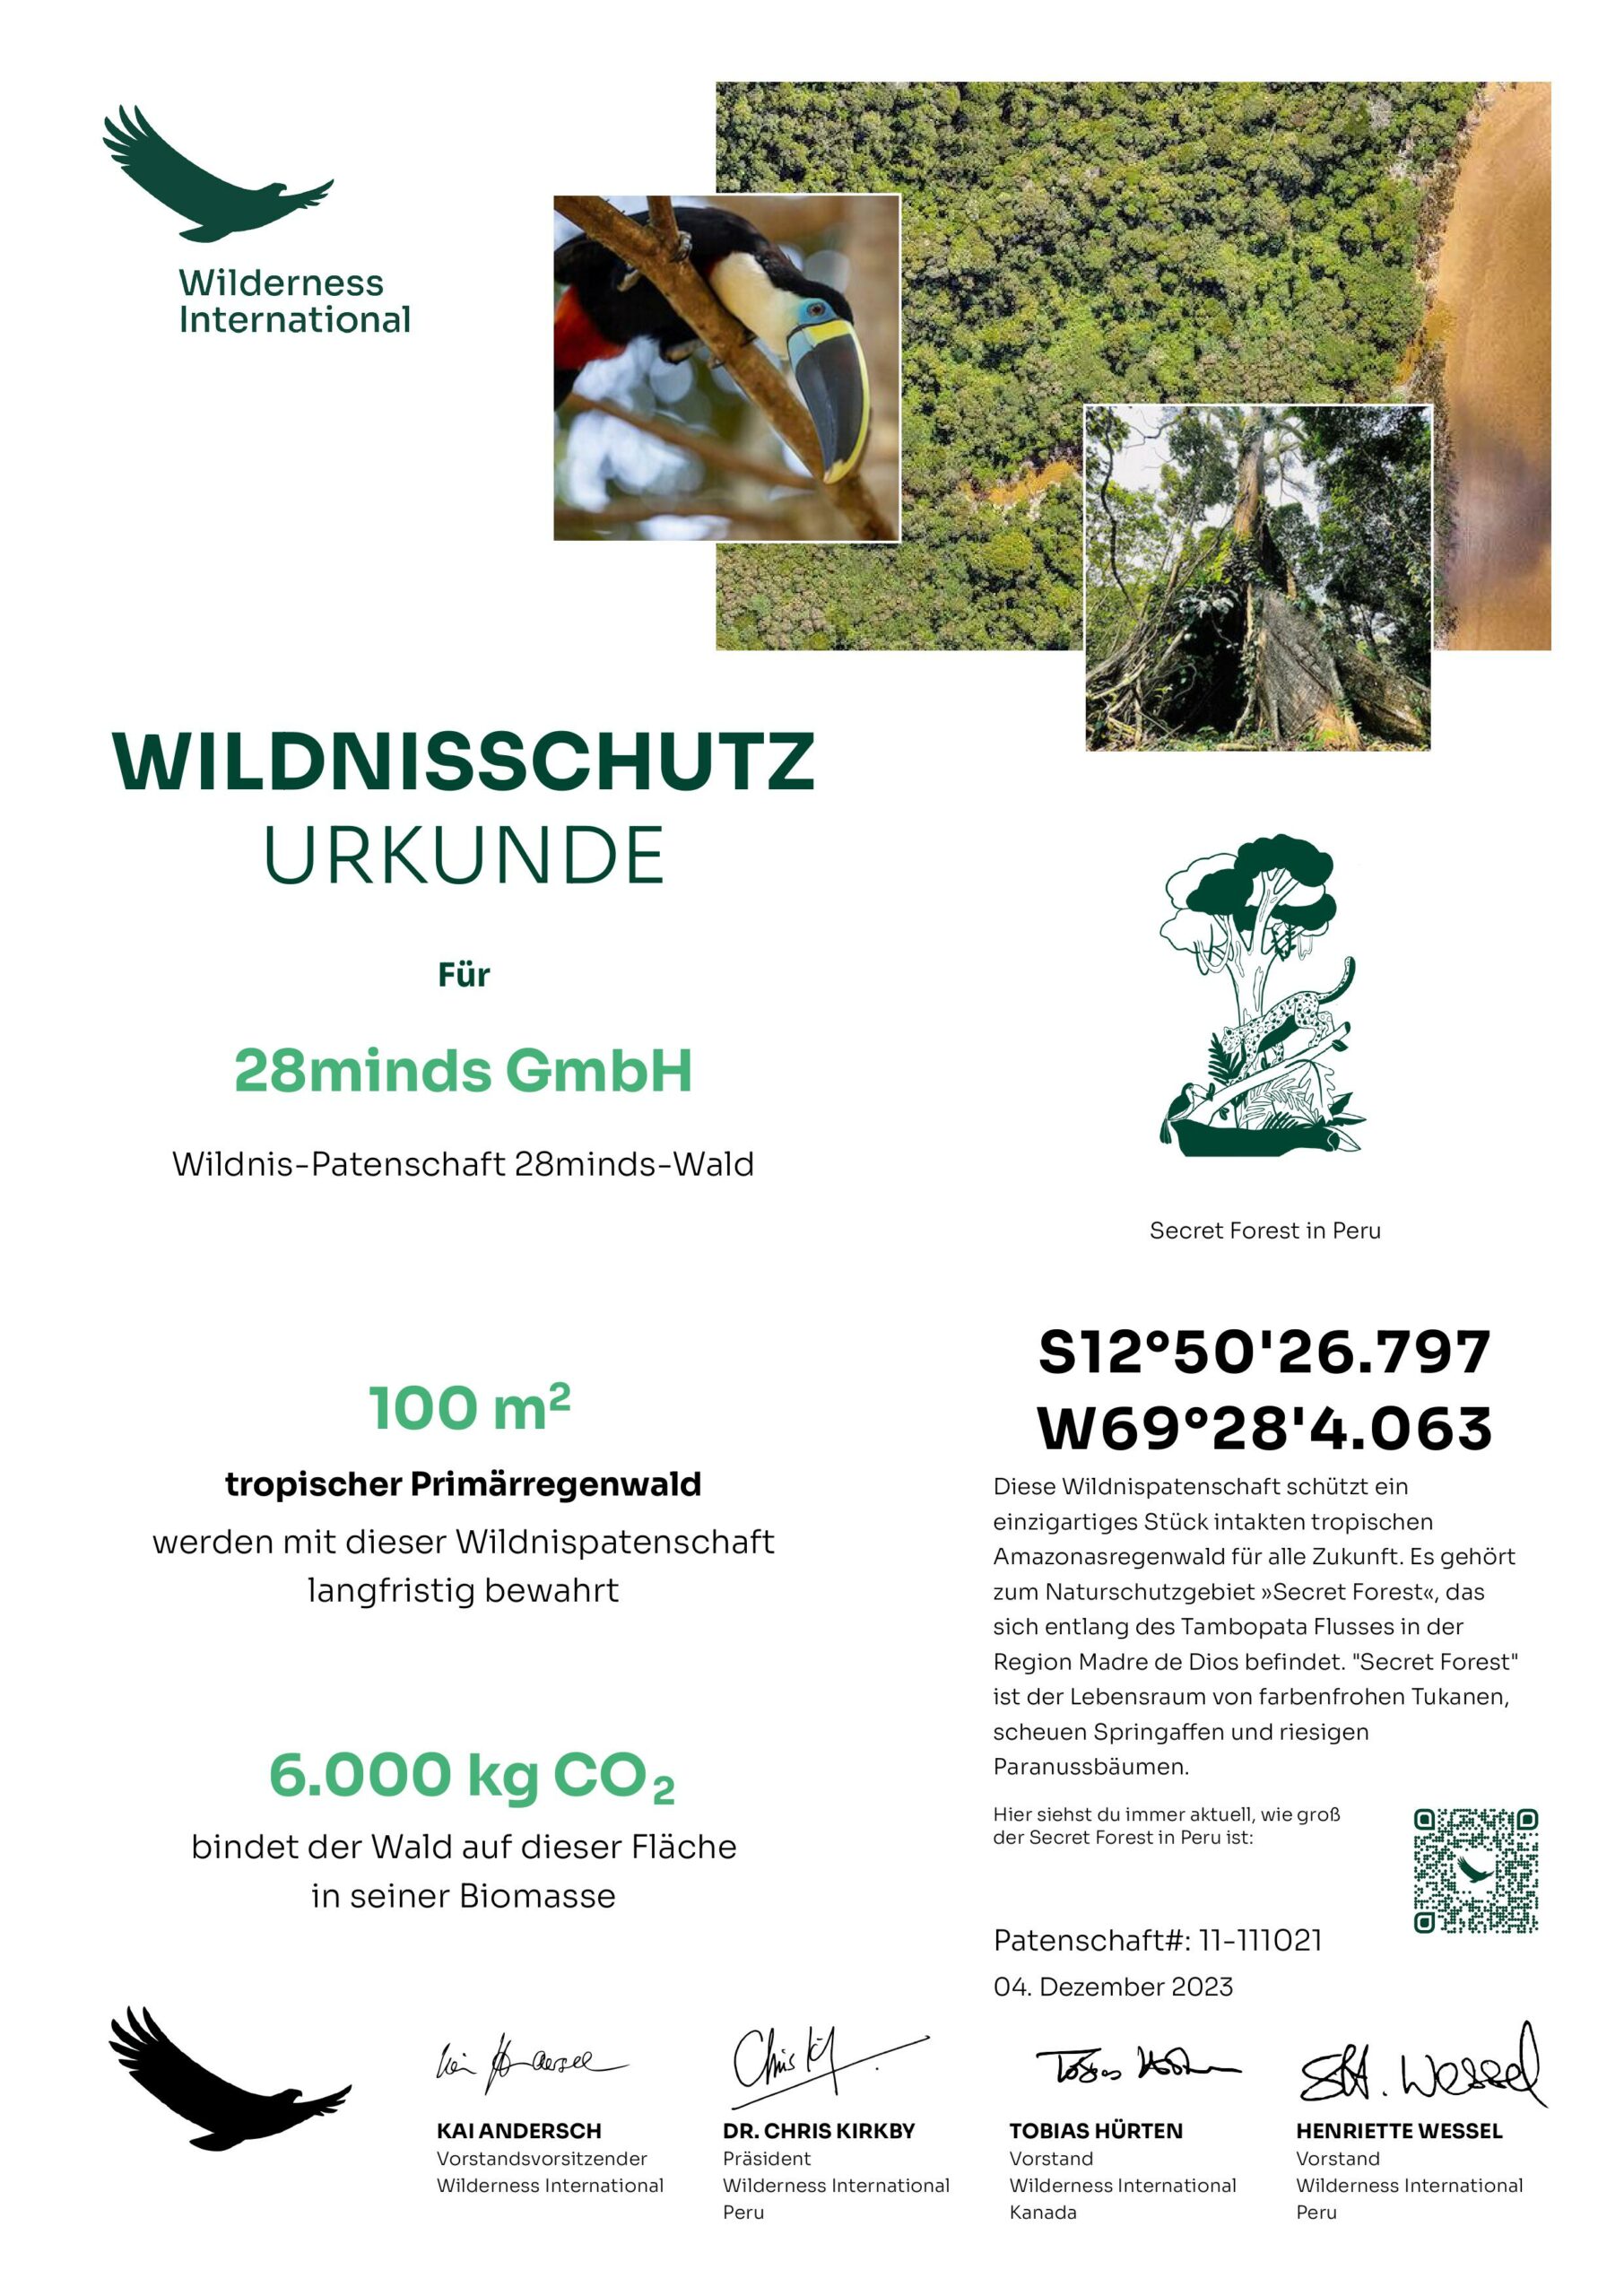 Urkunde Wilderness International 100qm Regenwald